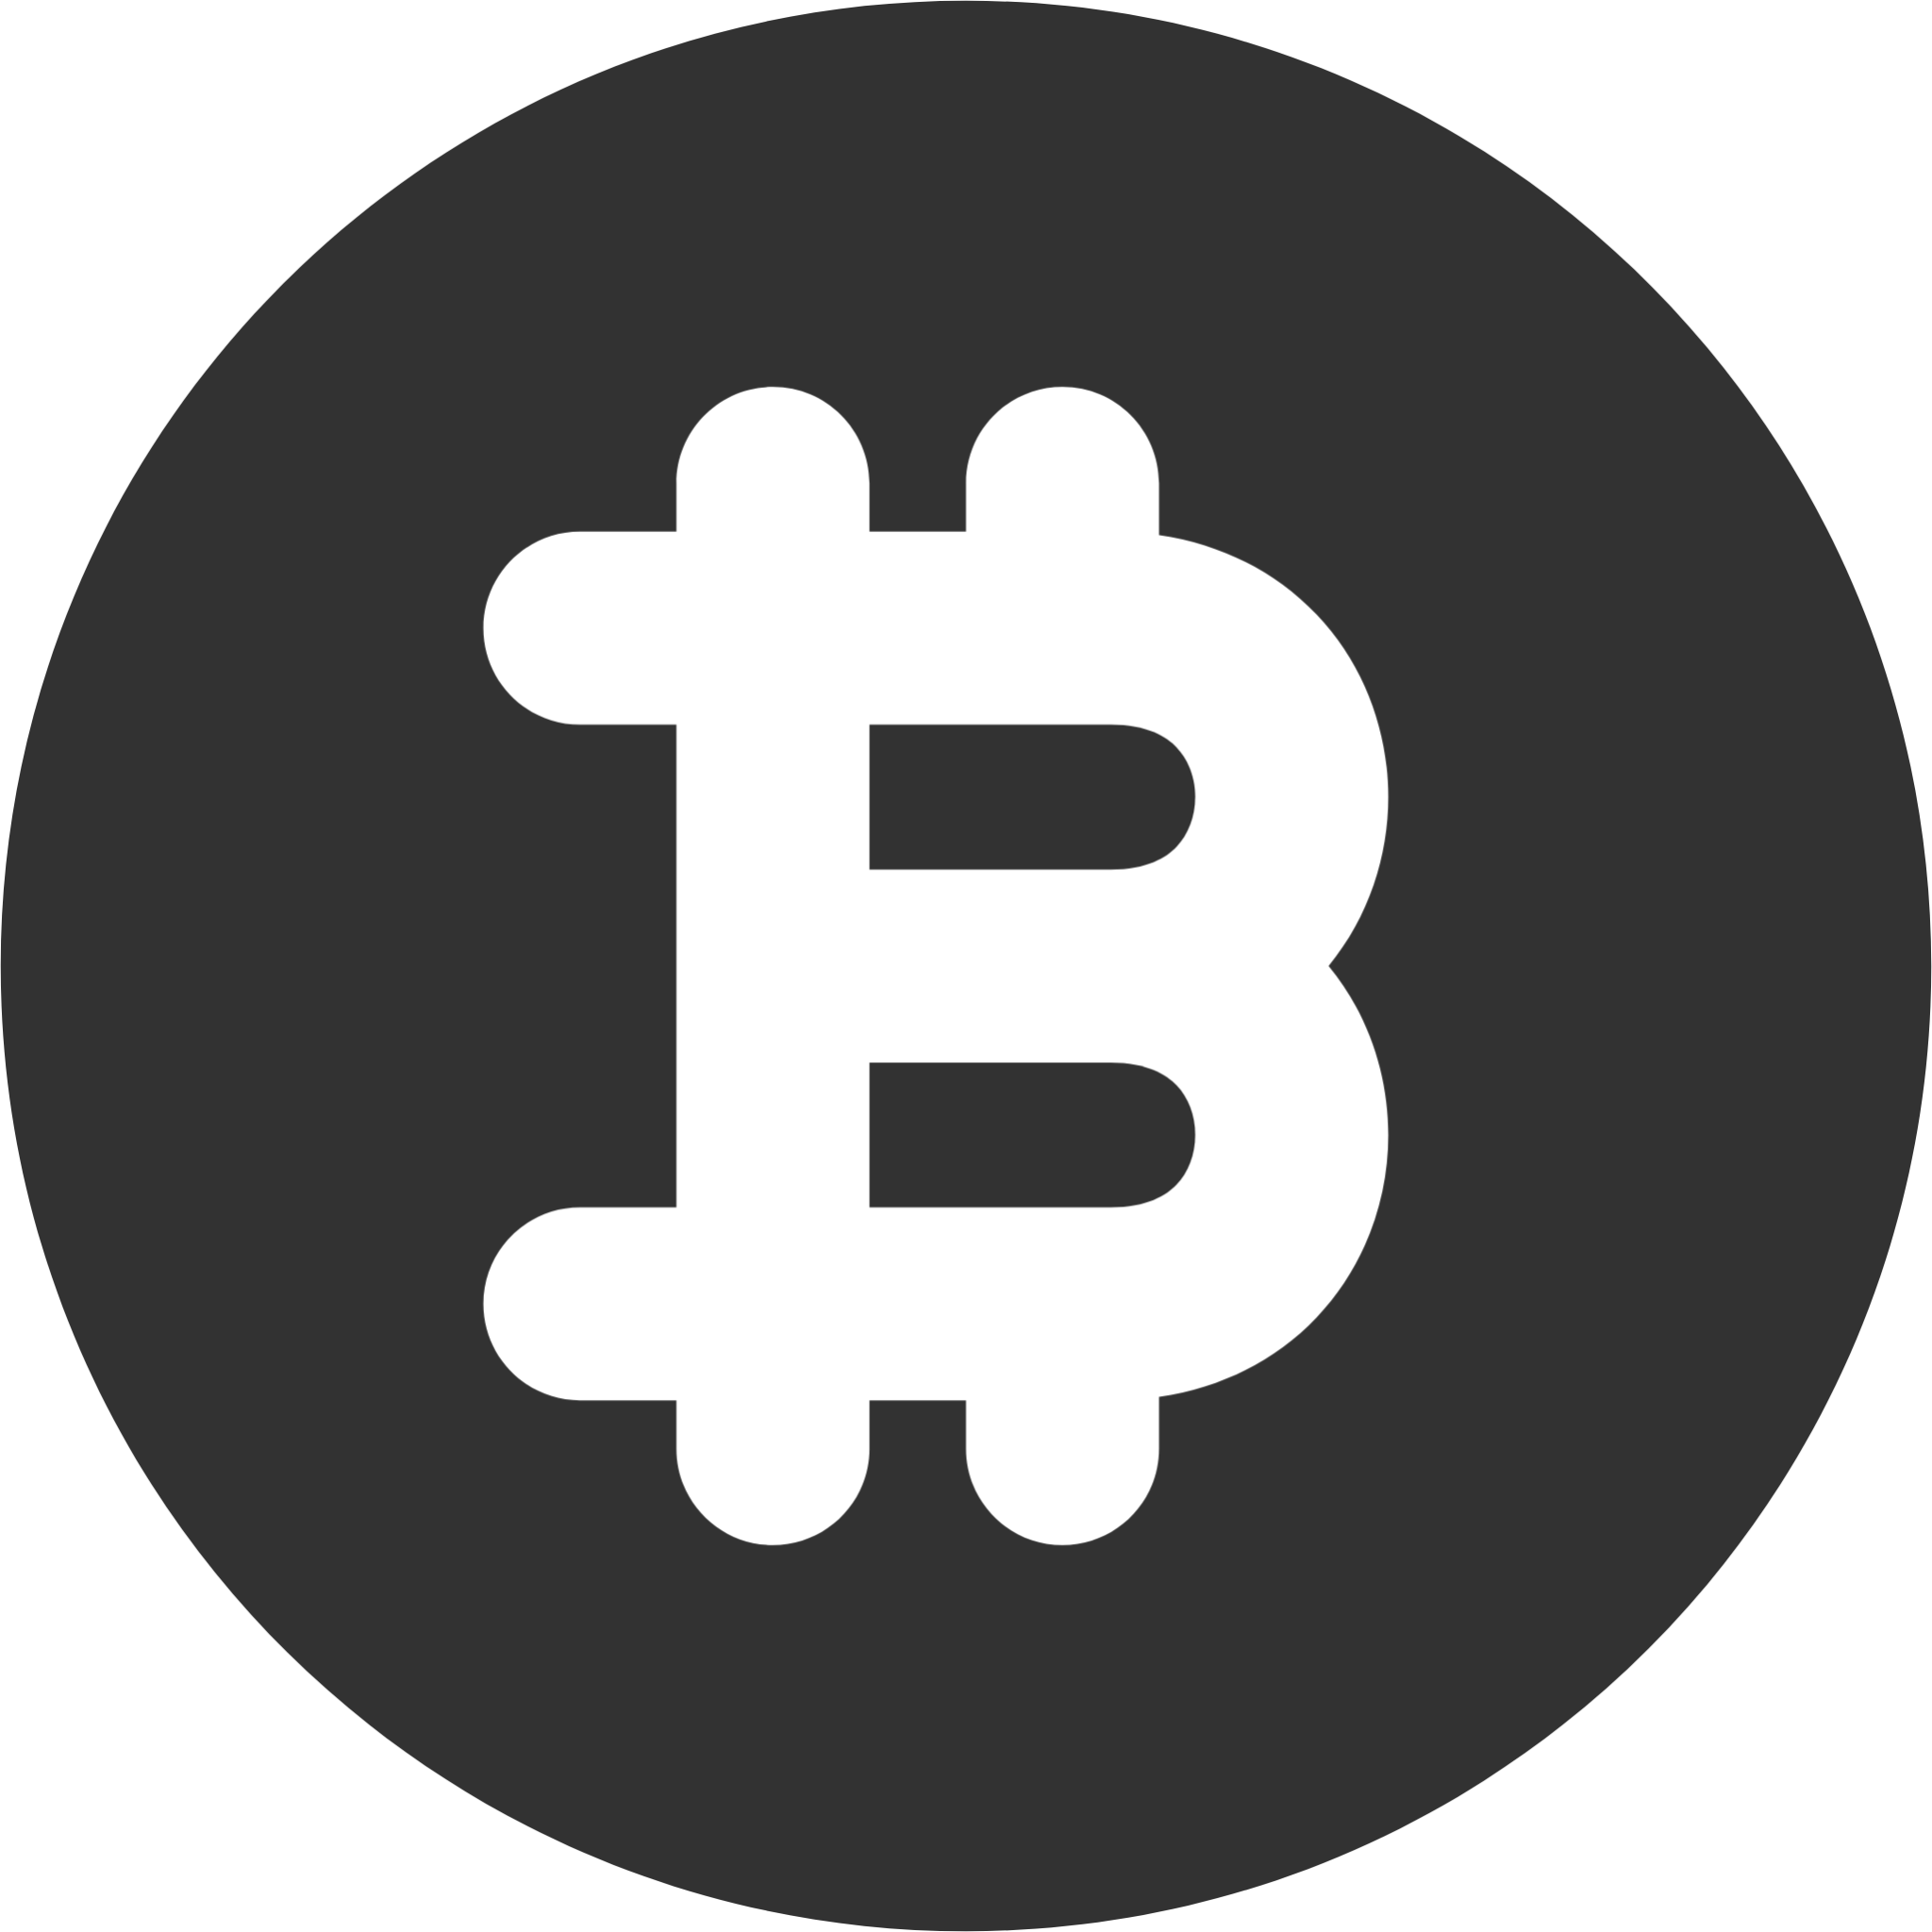 bitcoin circle icon